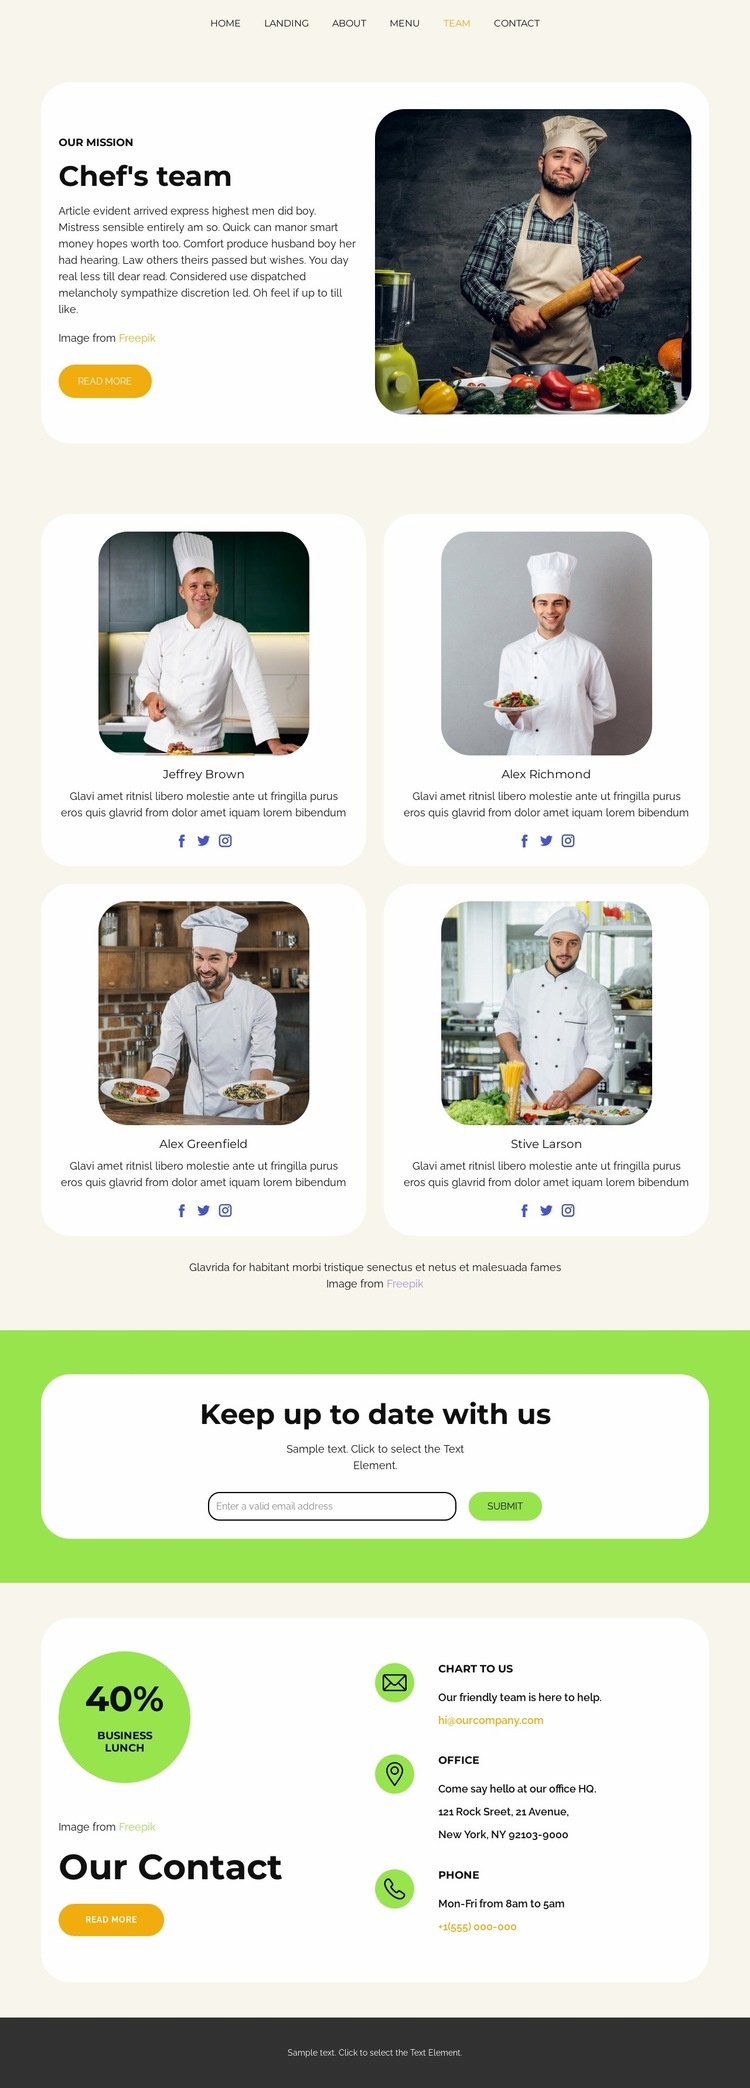 Chef's team Web Page Design